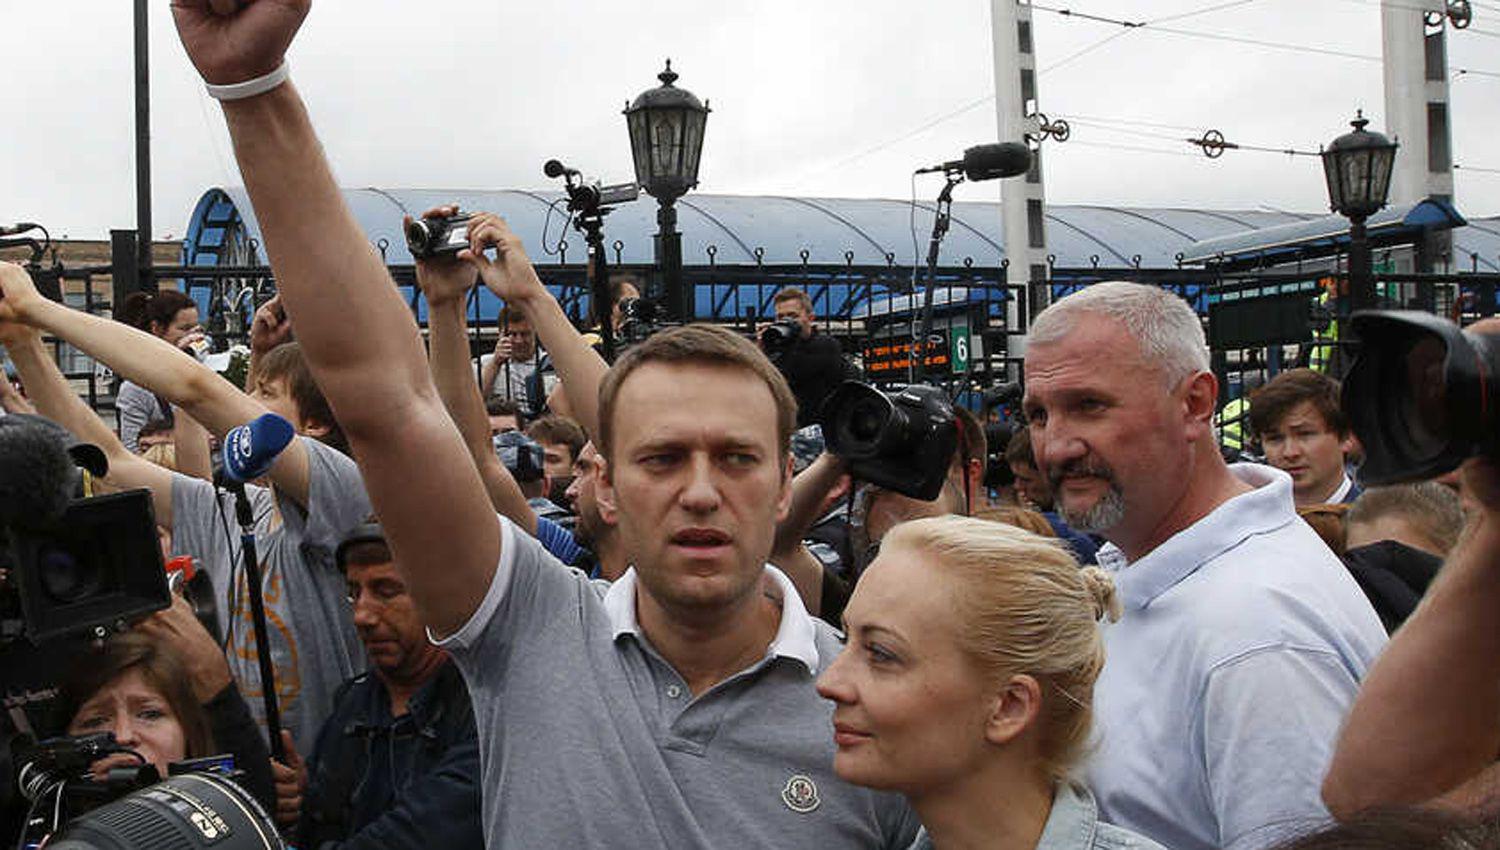 VIDEO  El opositor ruso Alexei Navalny estaacute en coma- aseguran que le pusieron veneno en el teacute